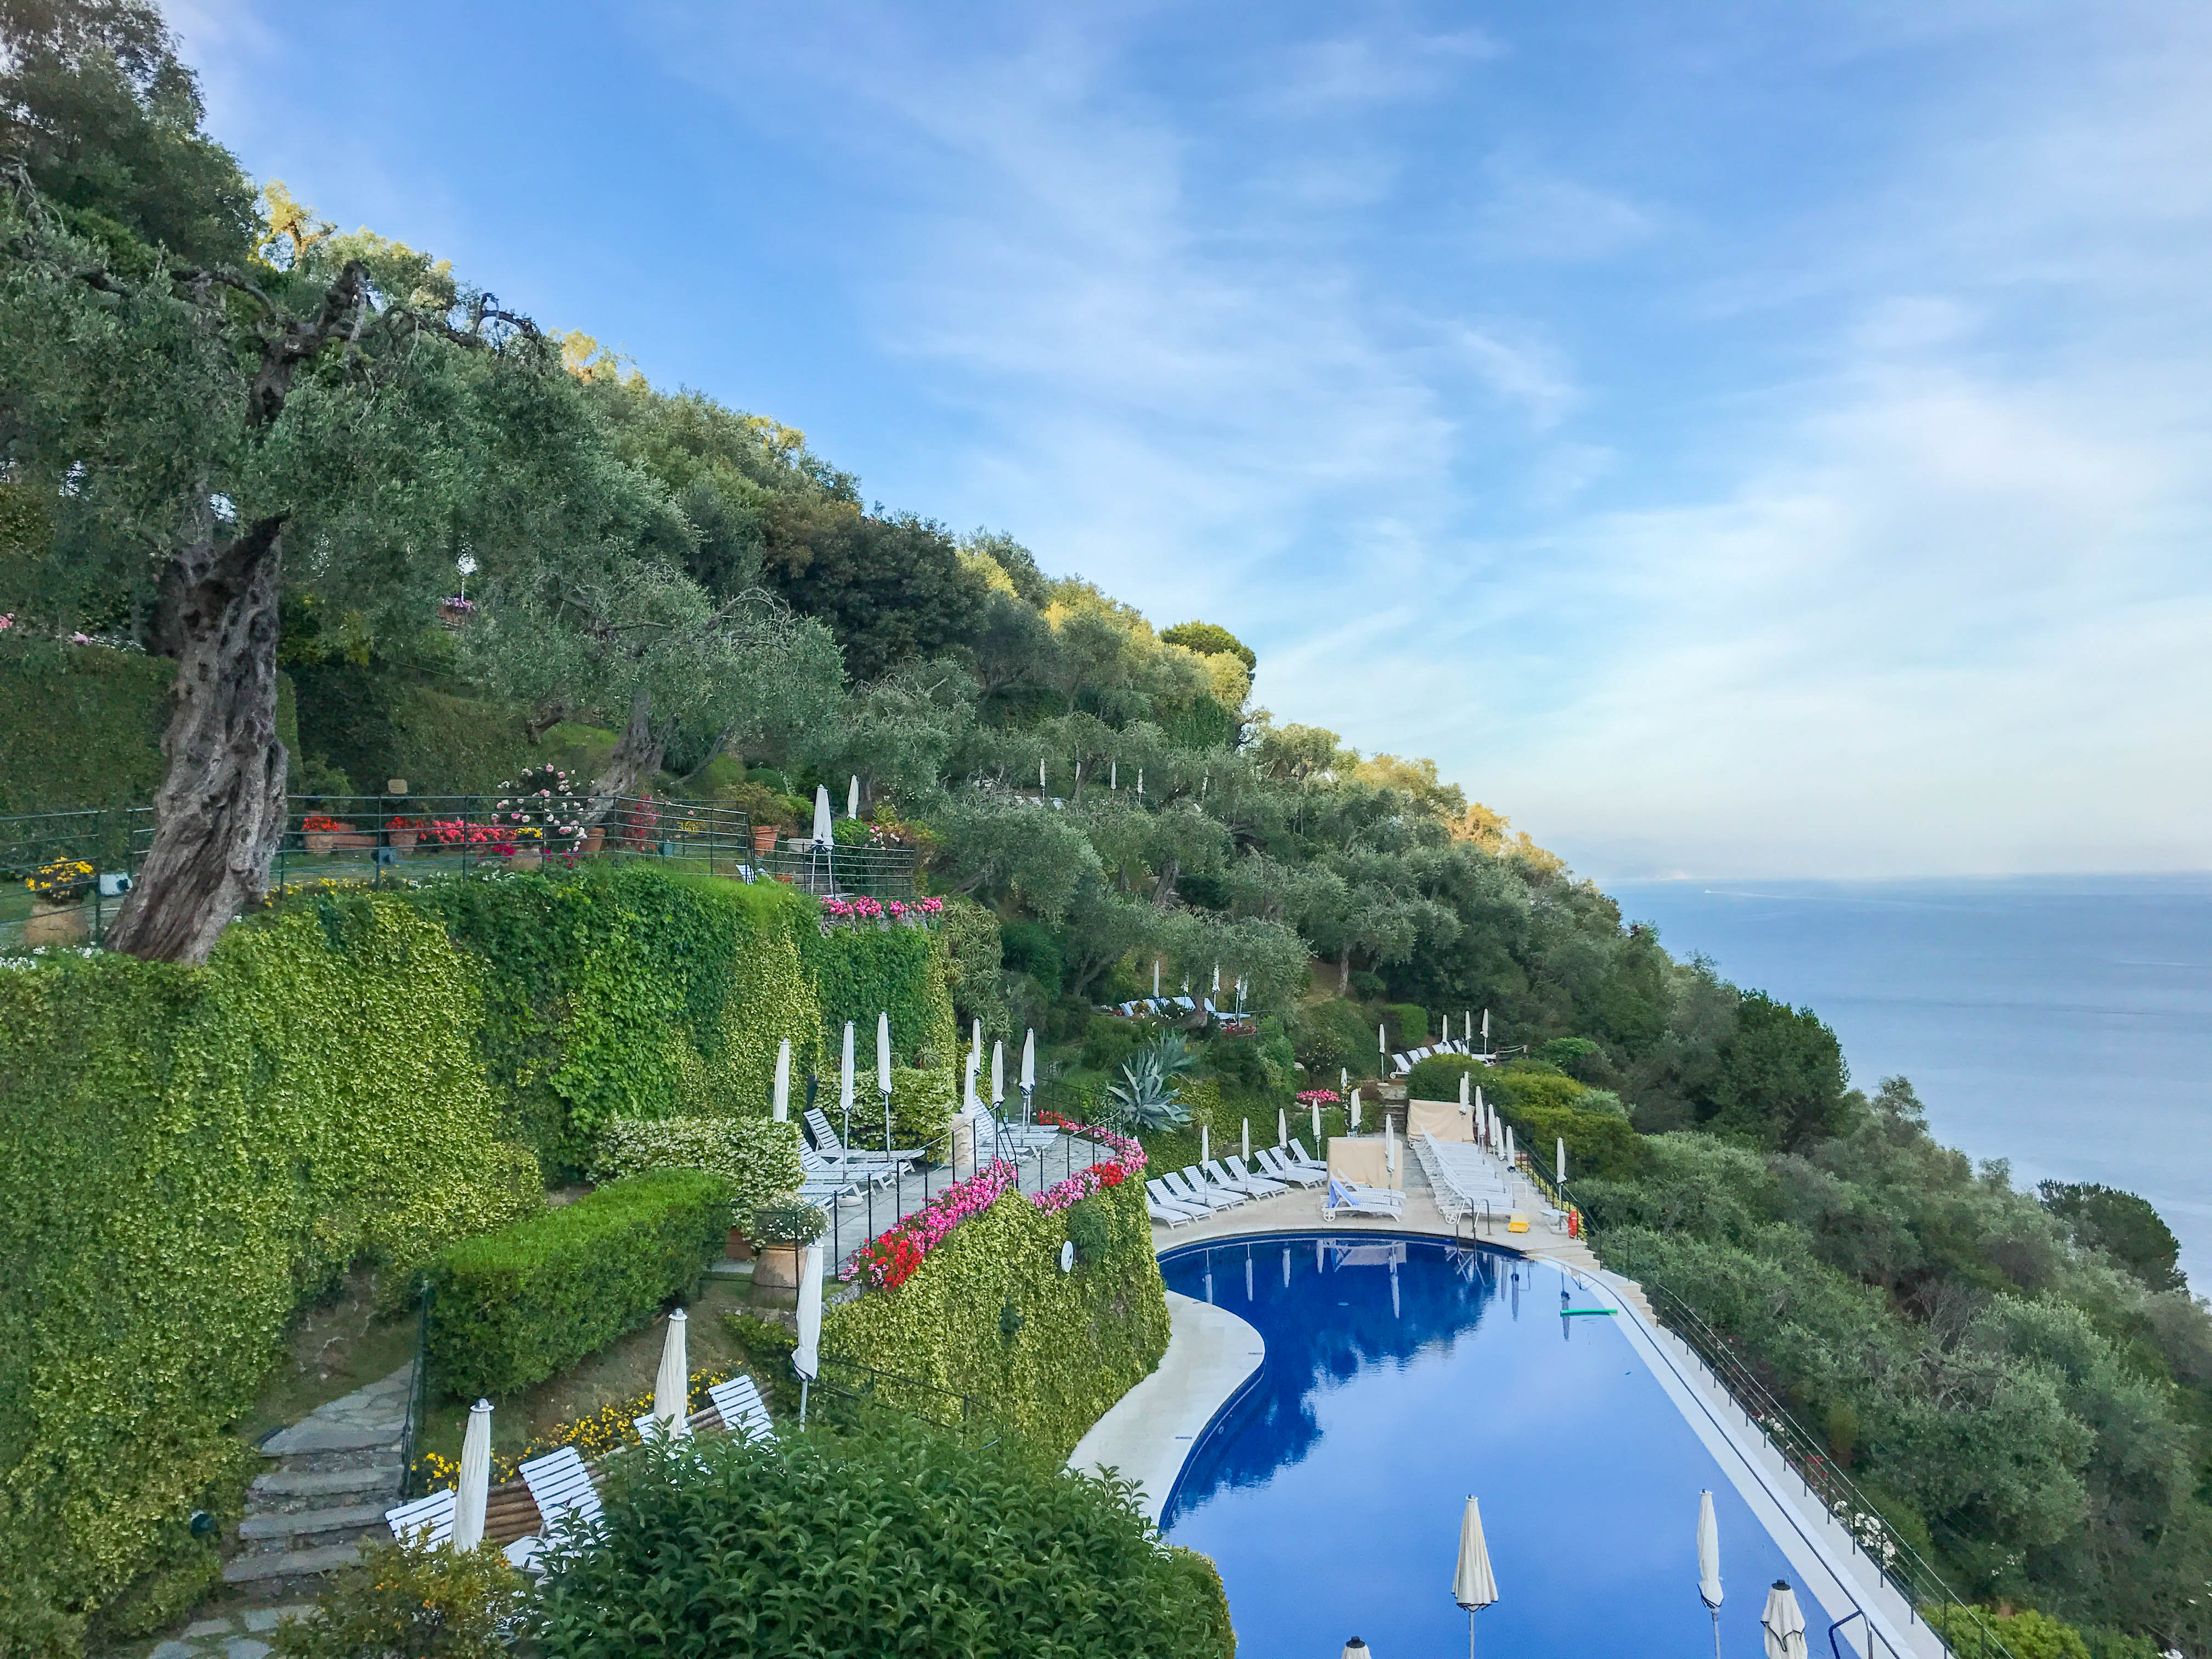 Belmond Hotel Splendido, Portofino